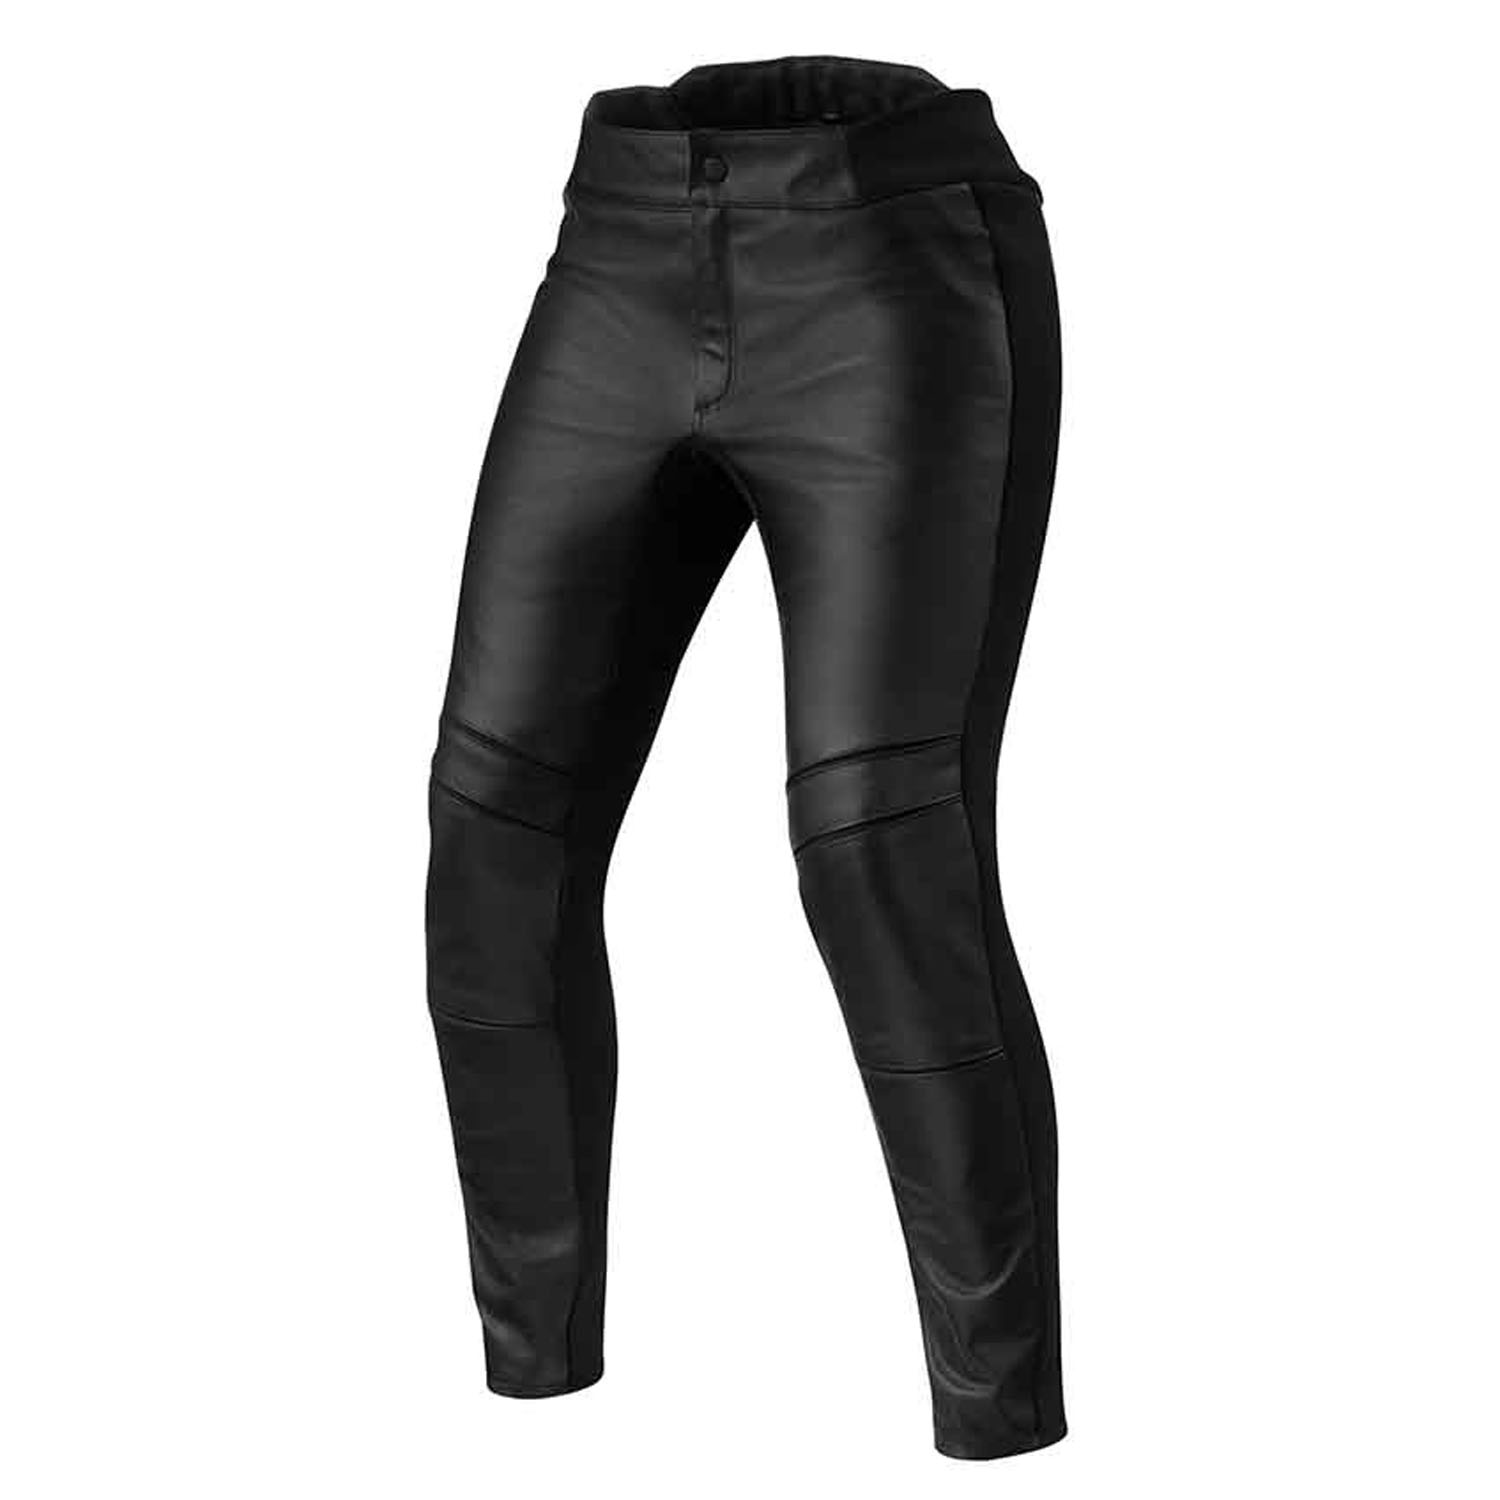 Image of REV'IT! Maci Ladies Black Standard Motorcycle Pants Größe 38